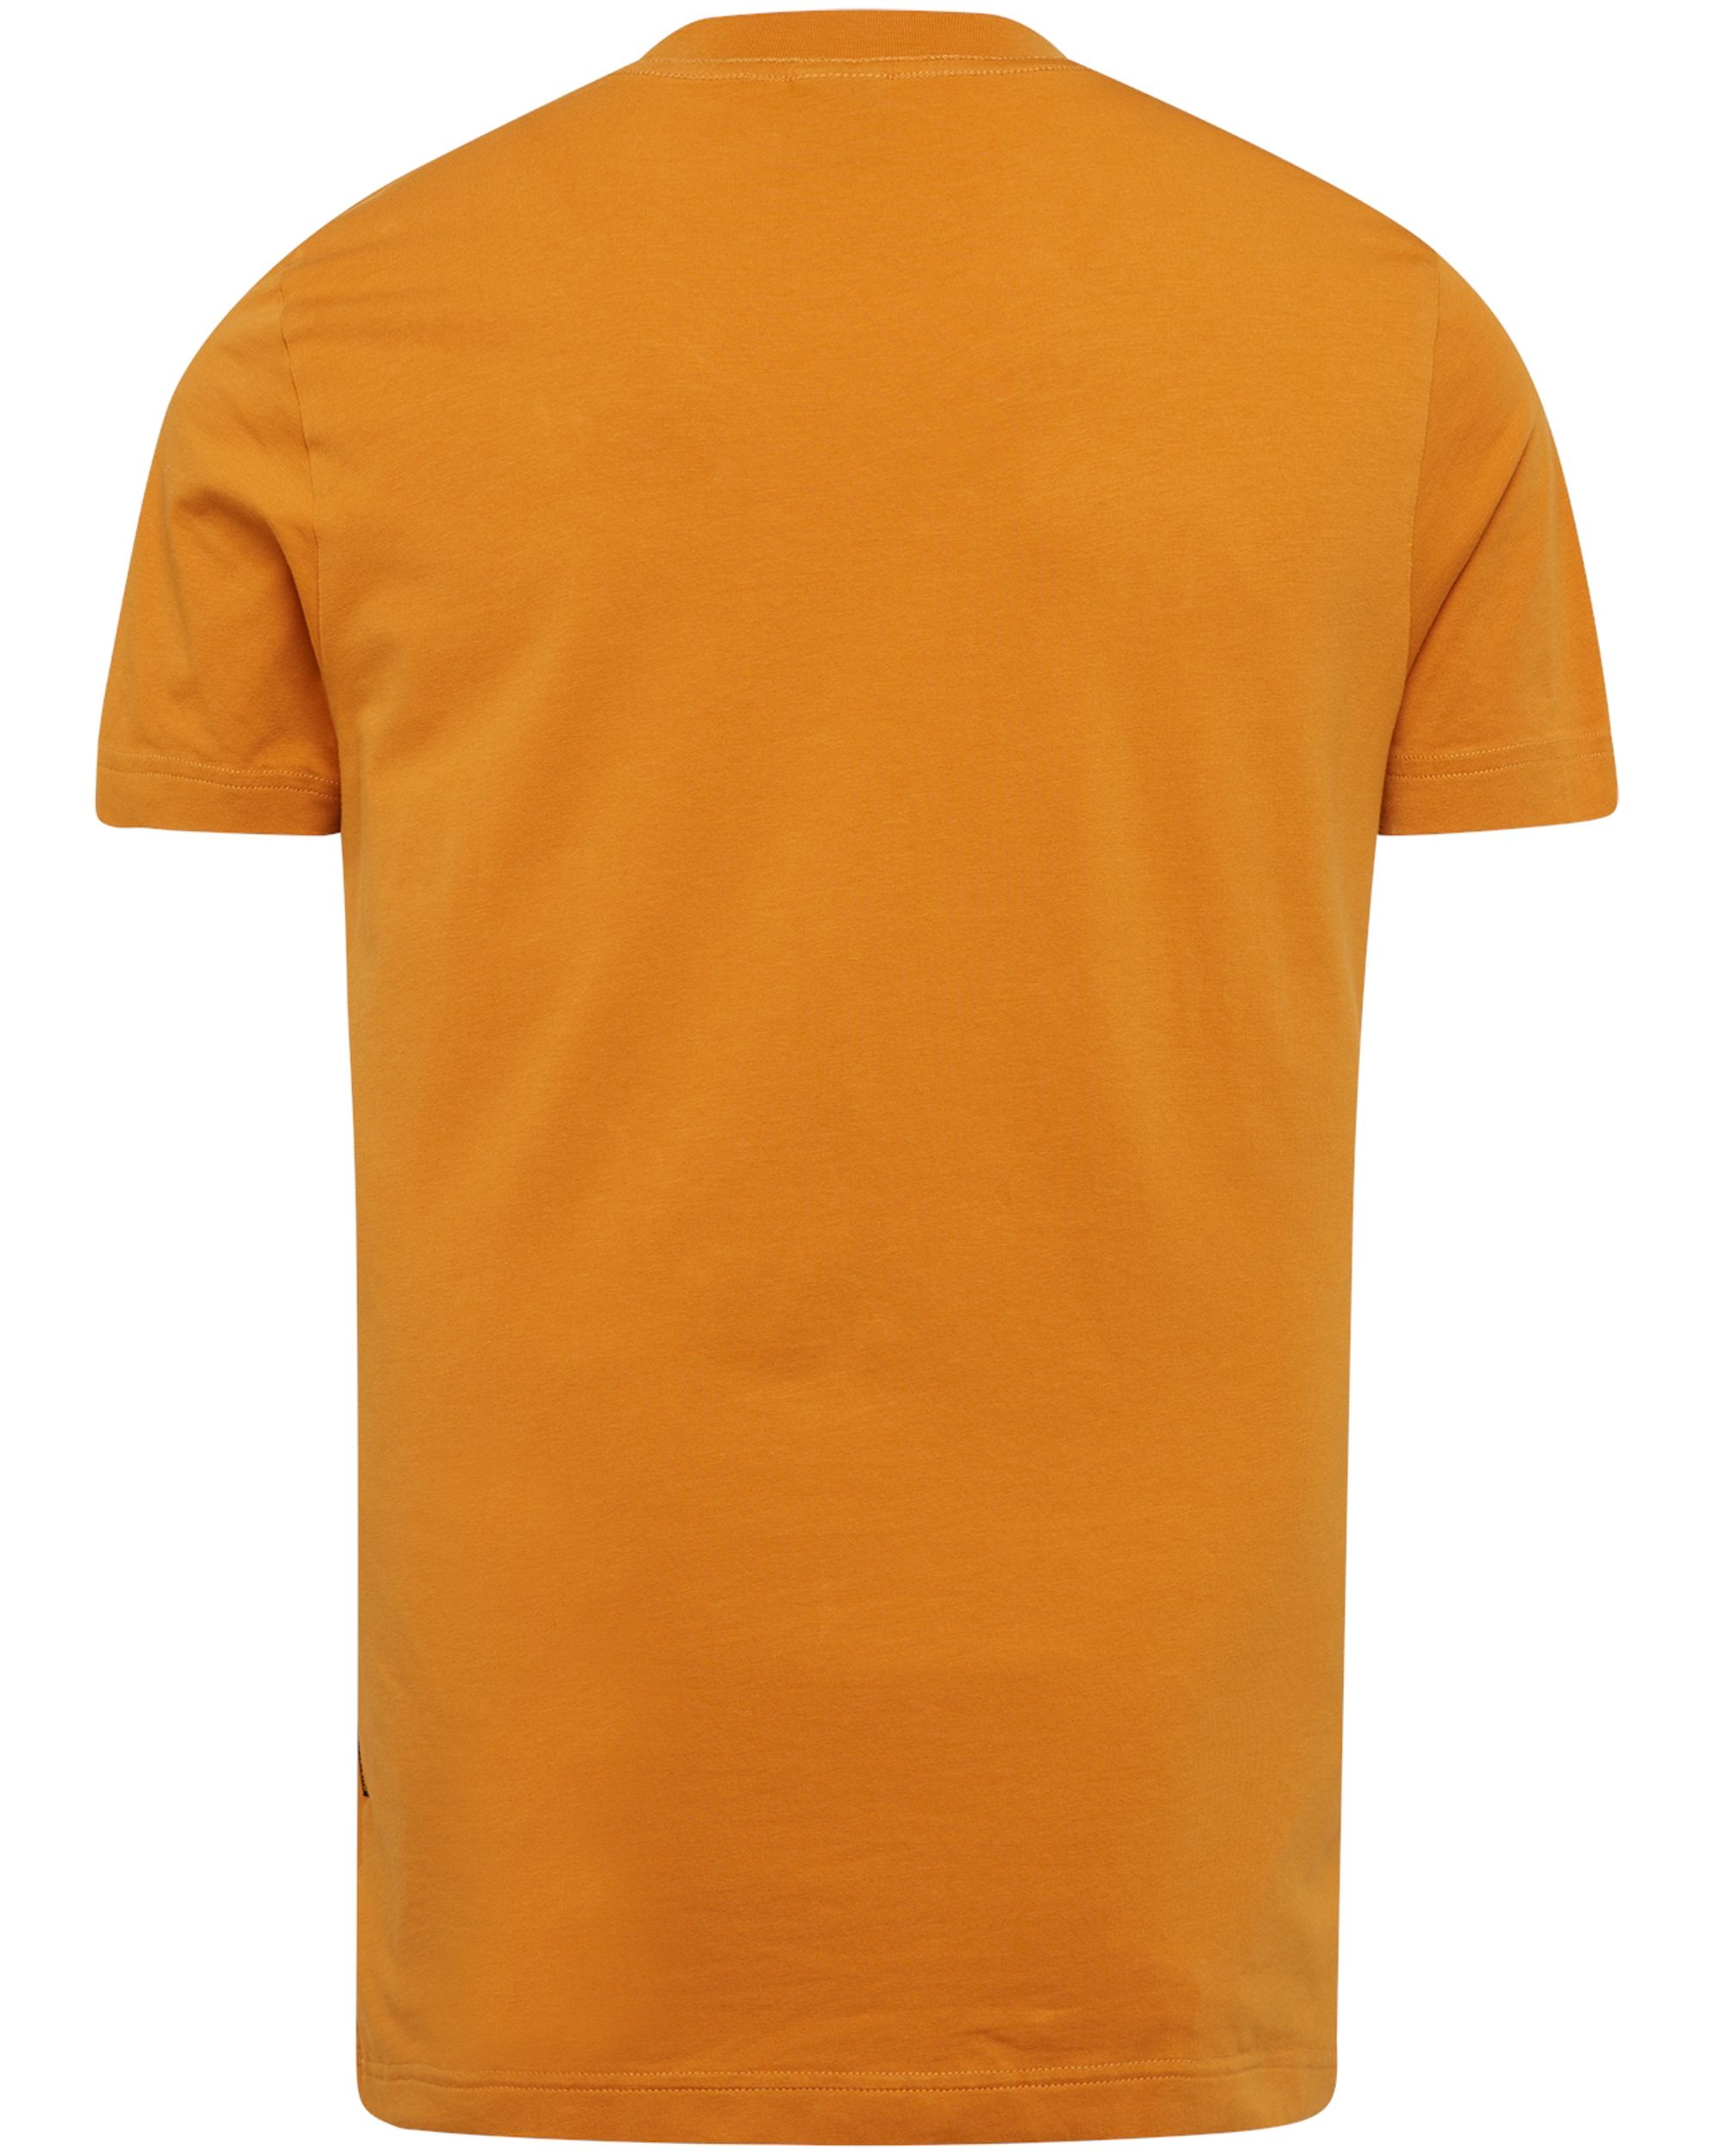 PME Legend T-shirt KM Oranje 082582-001-L